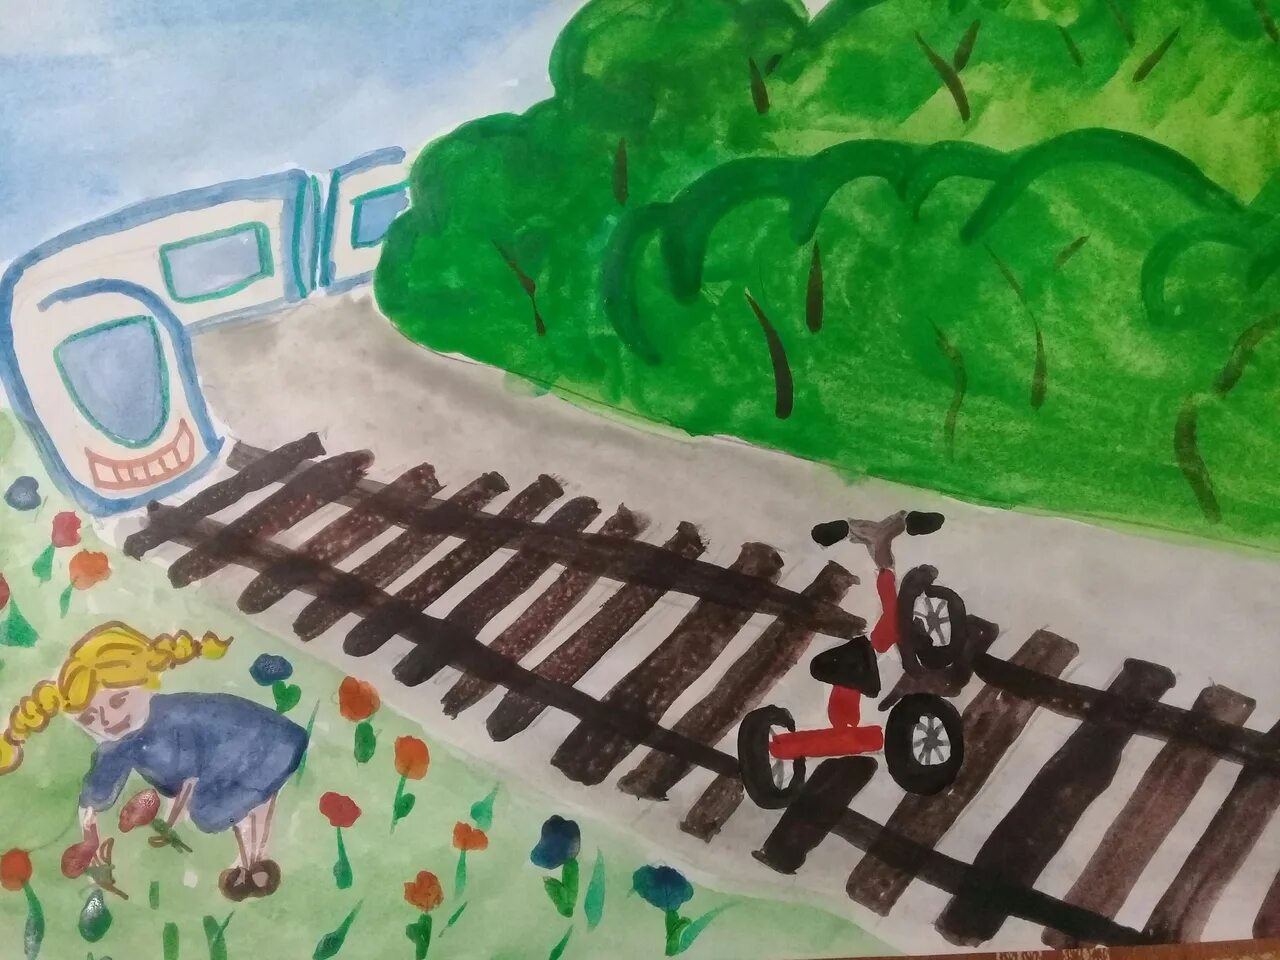 Нарисовать железную дорогу 1 класс